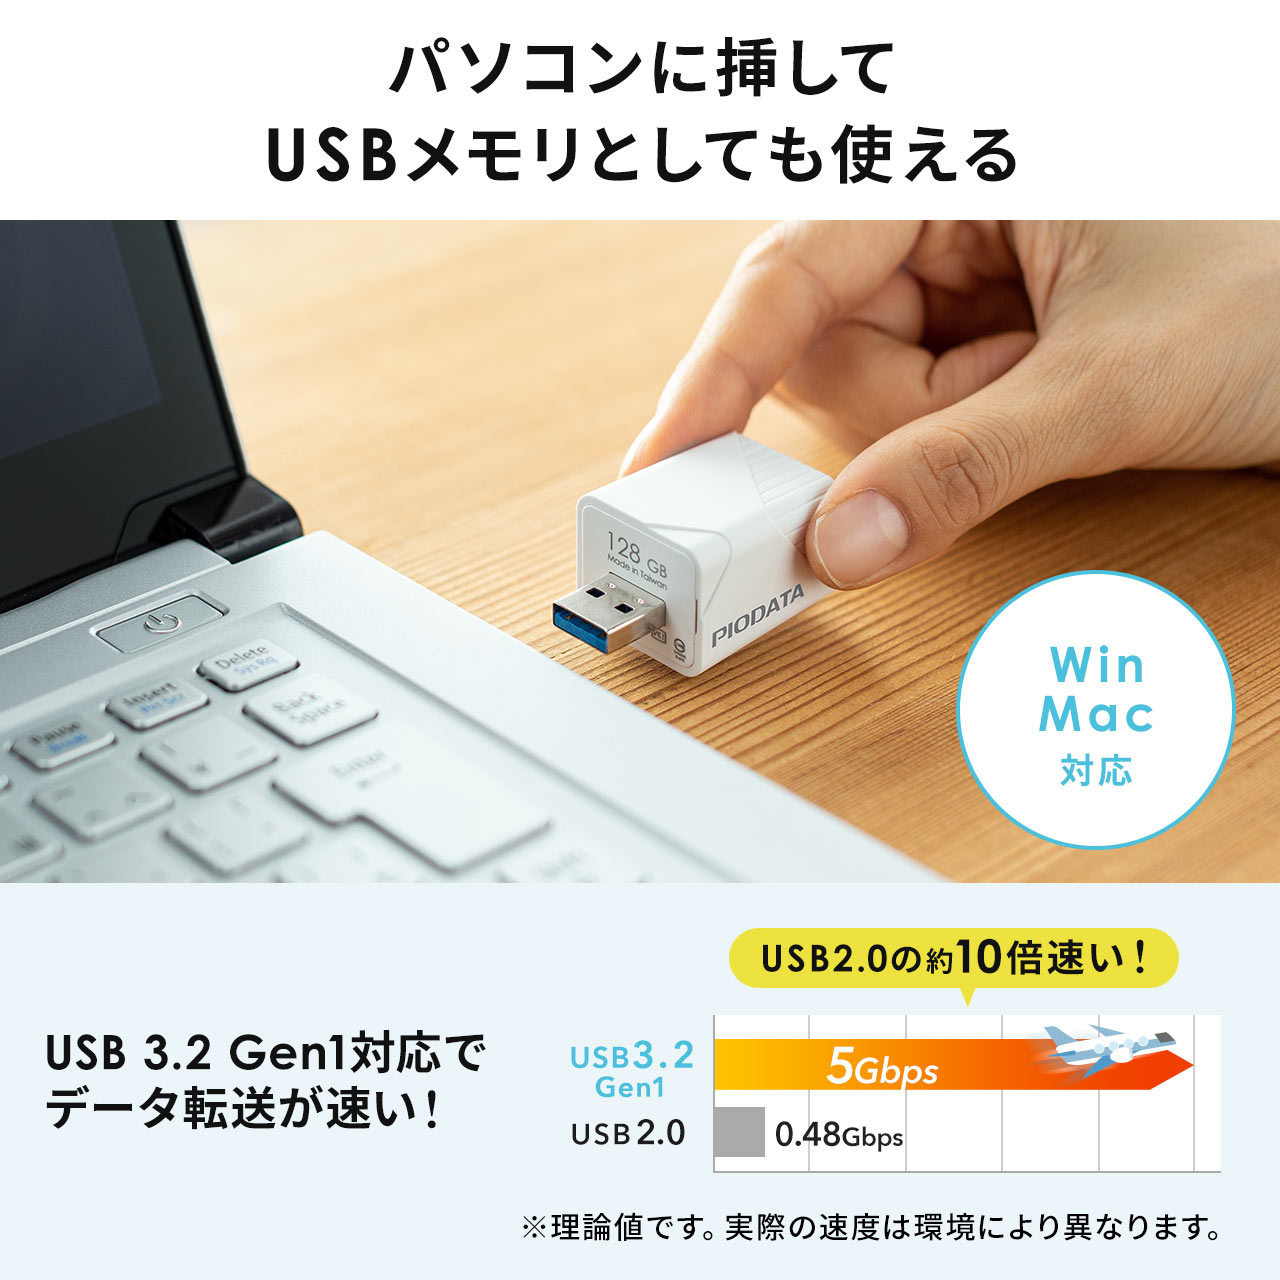 【メモリセール】iPhone iPad バックアップ USBメモリ 128GB MFi認証  USB3.2 Gen1(USB3.1/3.0) 600-IPLA128GB3